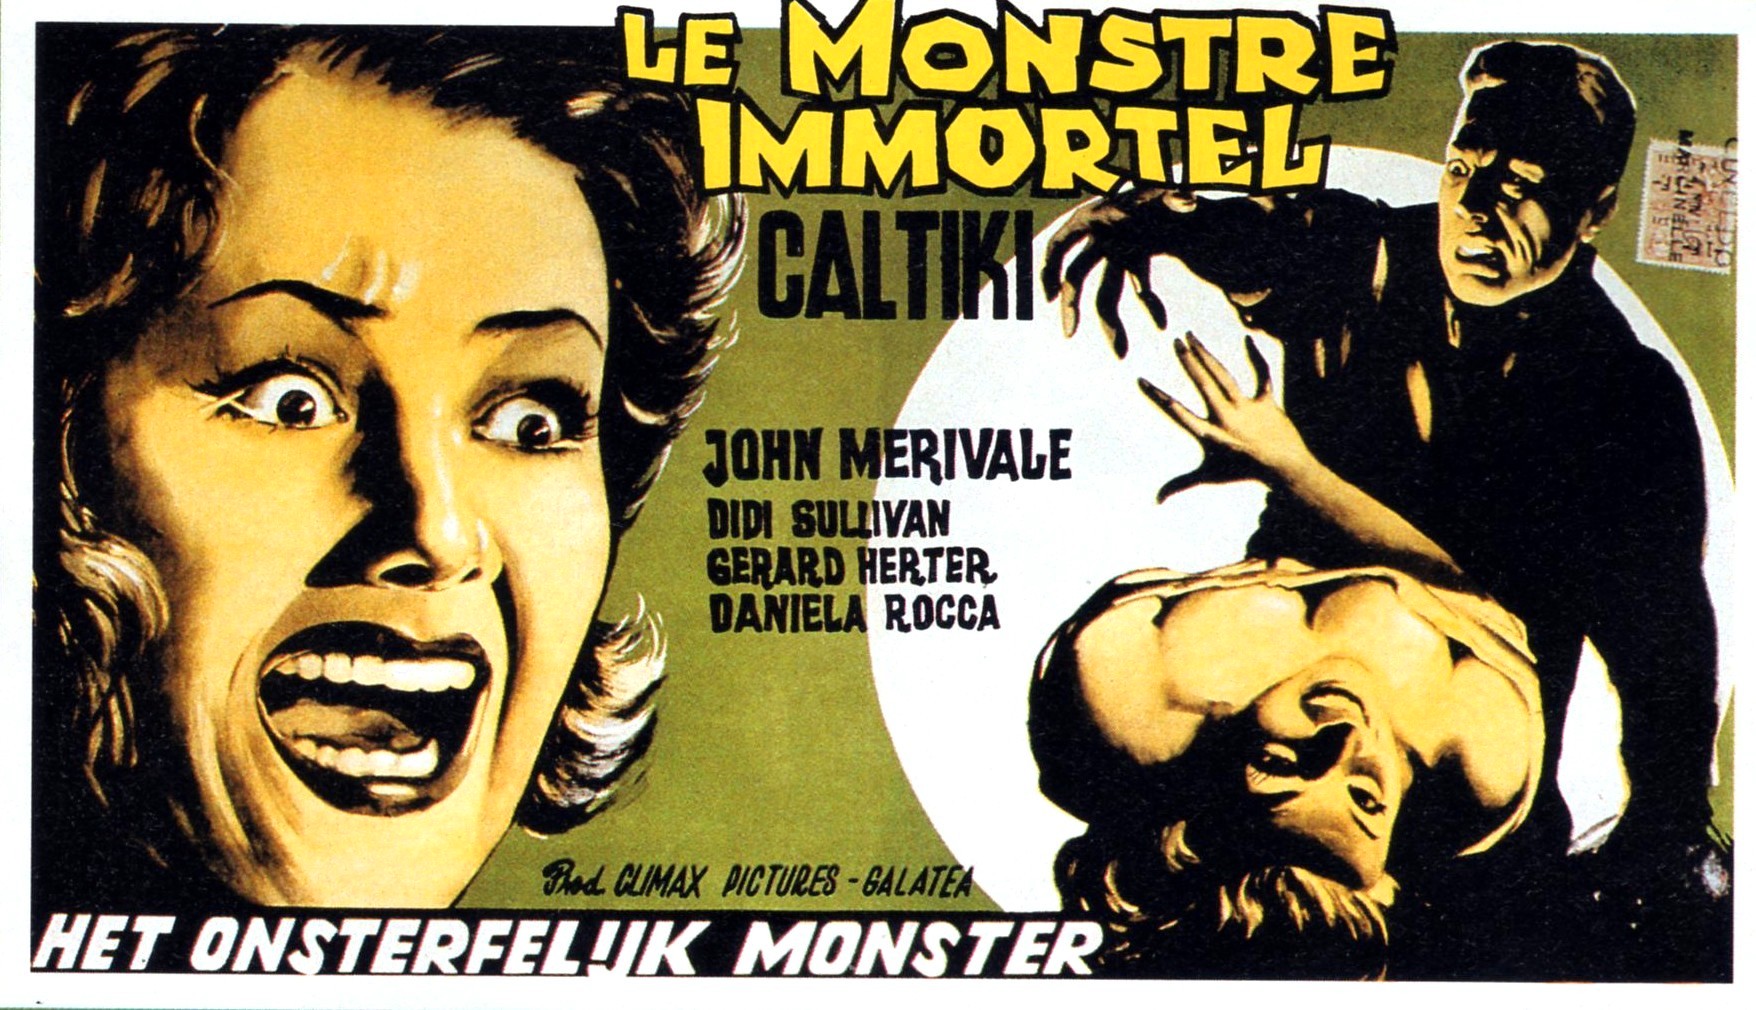 Caltiki, the Immortal Monster (1960)